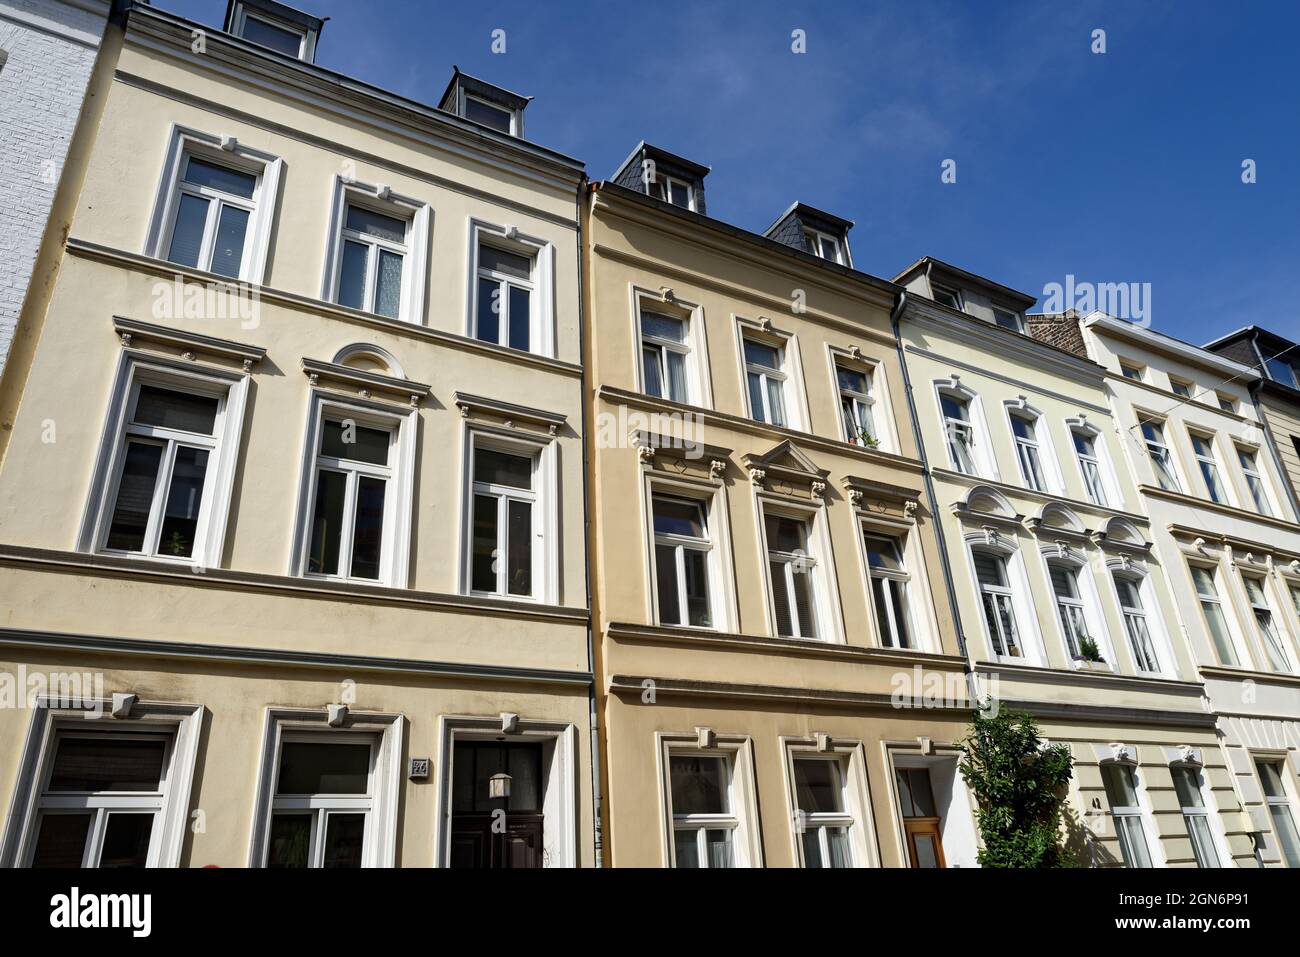 une rangée de trois maisons à fenêtre typiques de la fin du xixe siècle à cologne ehrenfeld Banque D'Images